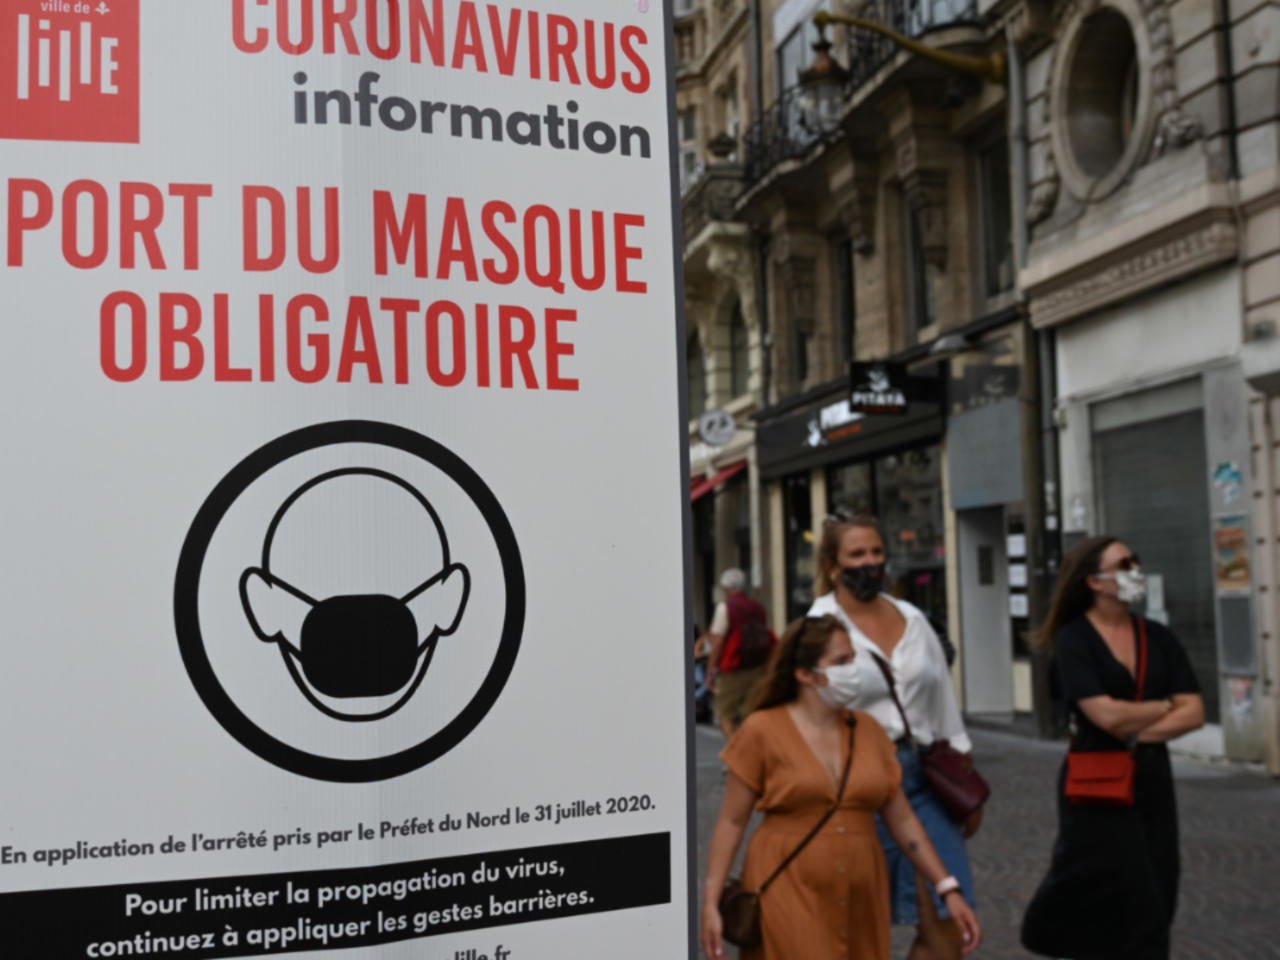 Francia obliga a llevar mascarillas para evitar la propagación del Covid - 19 / France 24